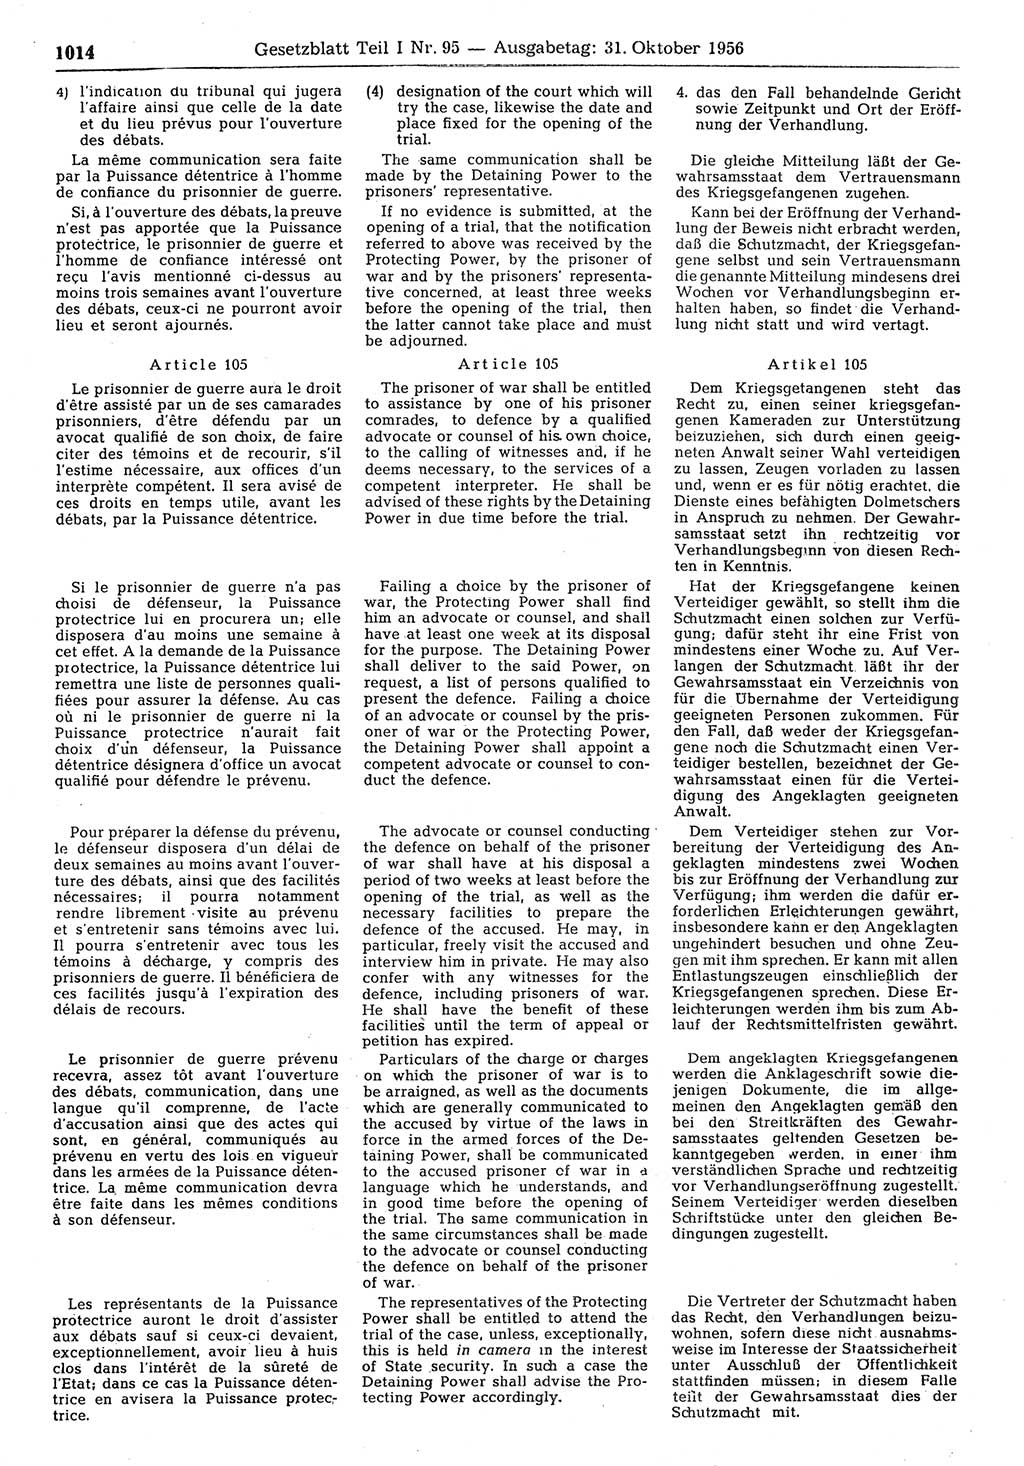 Gesetzblatt (GBl.) der Deutschen Demokratischen Republik (DDR) Teil Ⅰ 1956, Seite 1014 (GBl. DDR Ⅰ 1956, S. 1014)